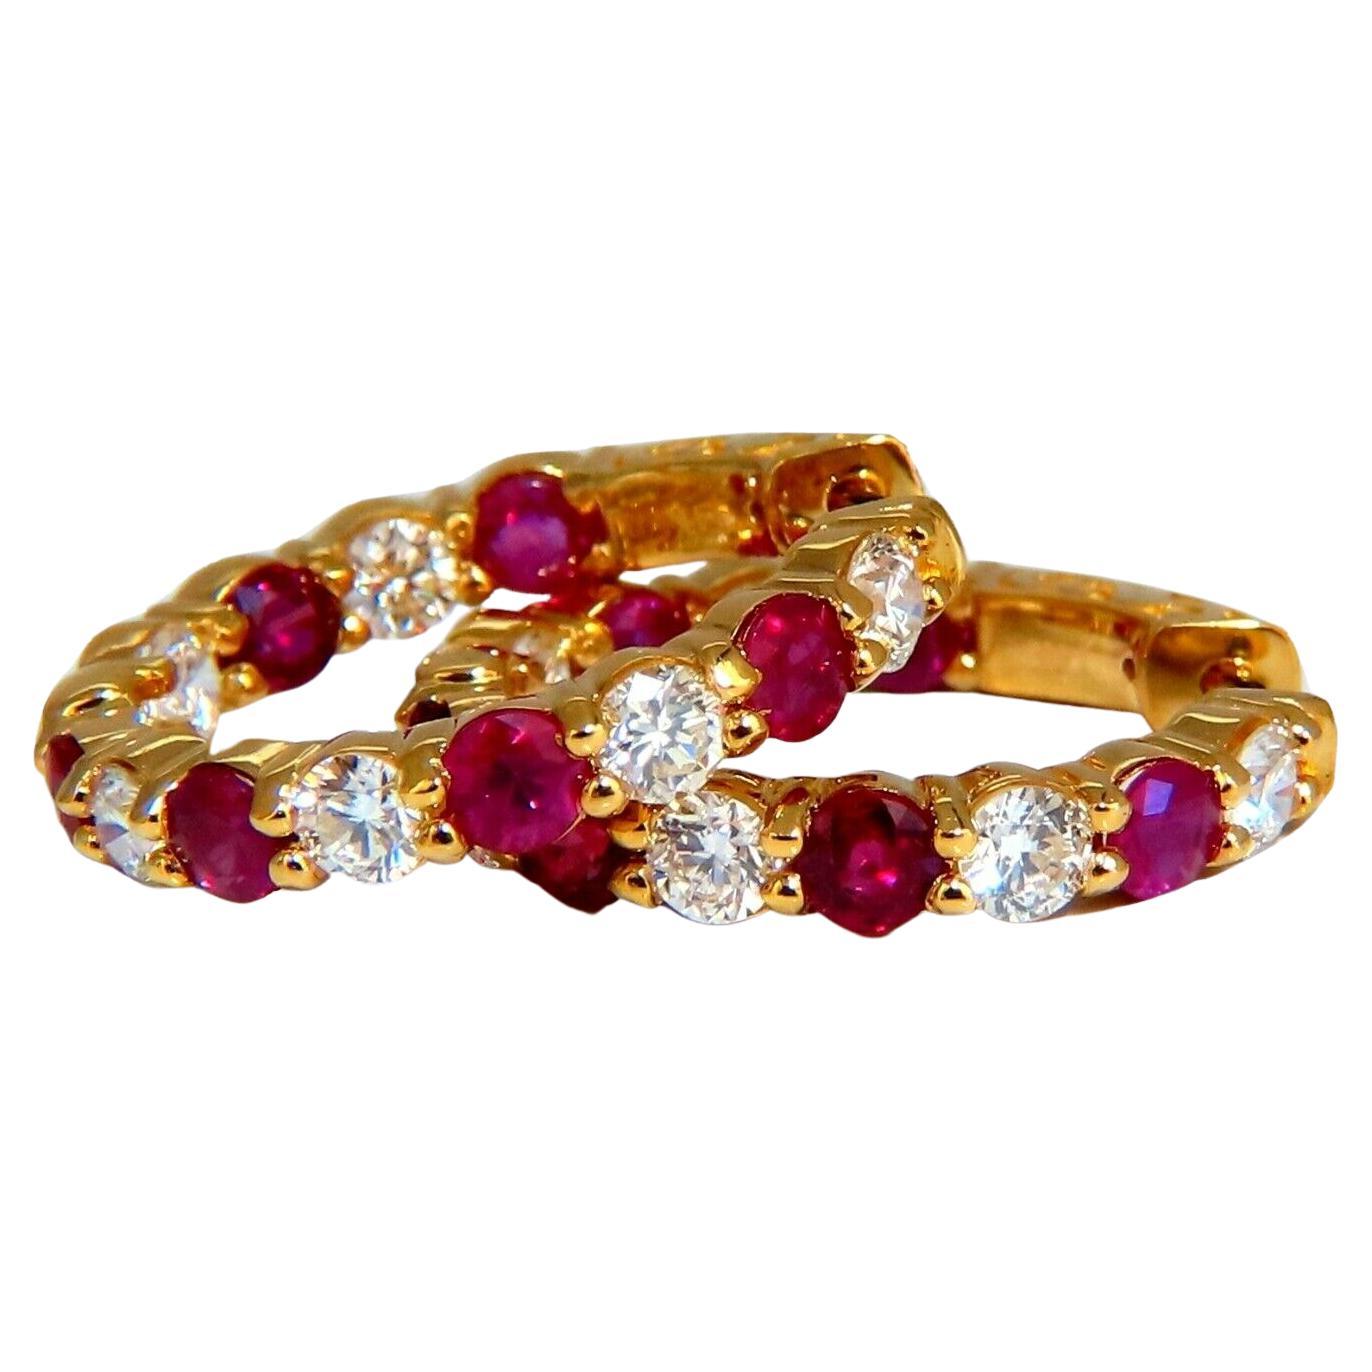 Créoles en or jaune 14 carats avec diamants et rubis naturel de 4,14 carats, intérieur et extérieur